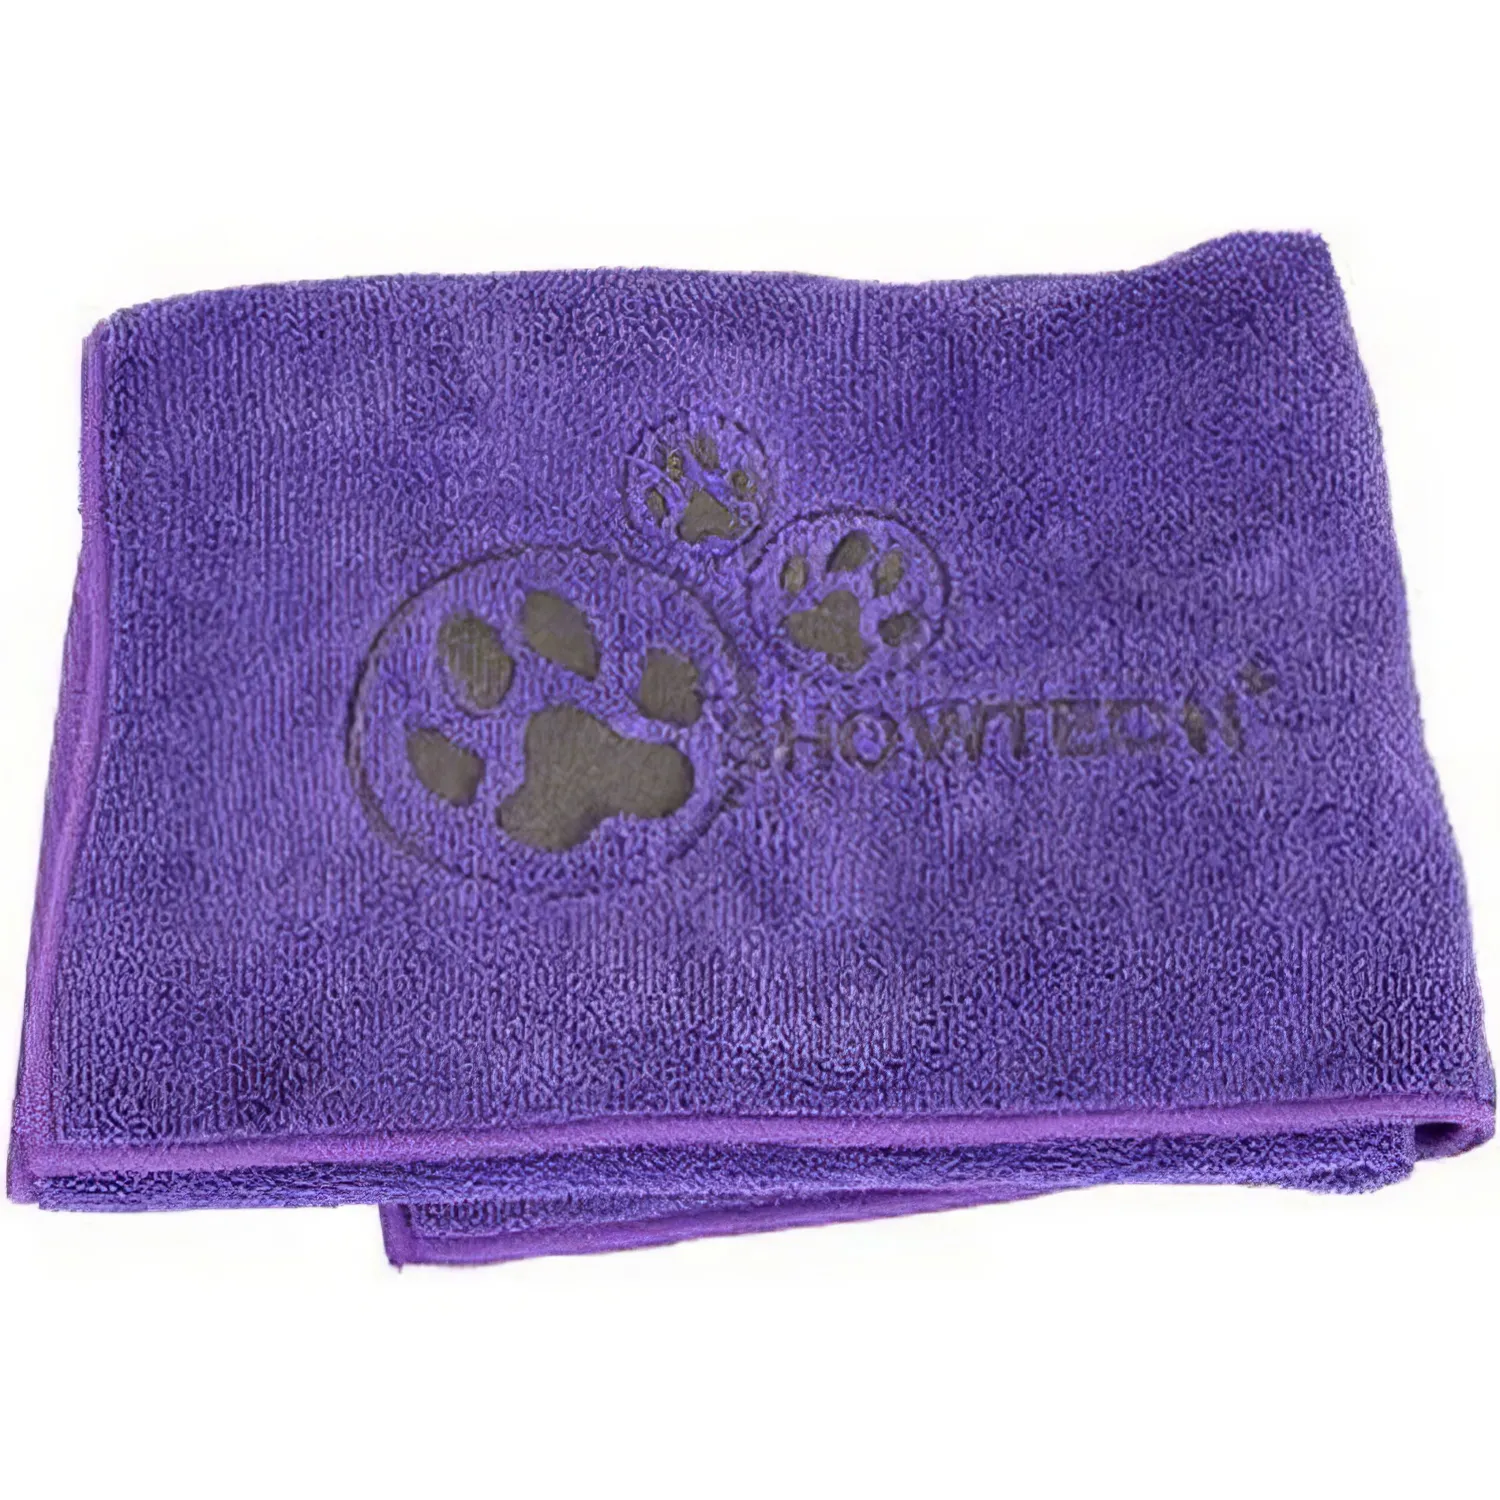 SHOW TECH Microtowel полотенце из микрофибры фиолетовое 56x90 см